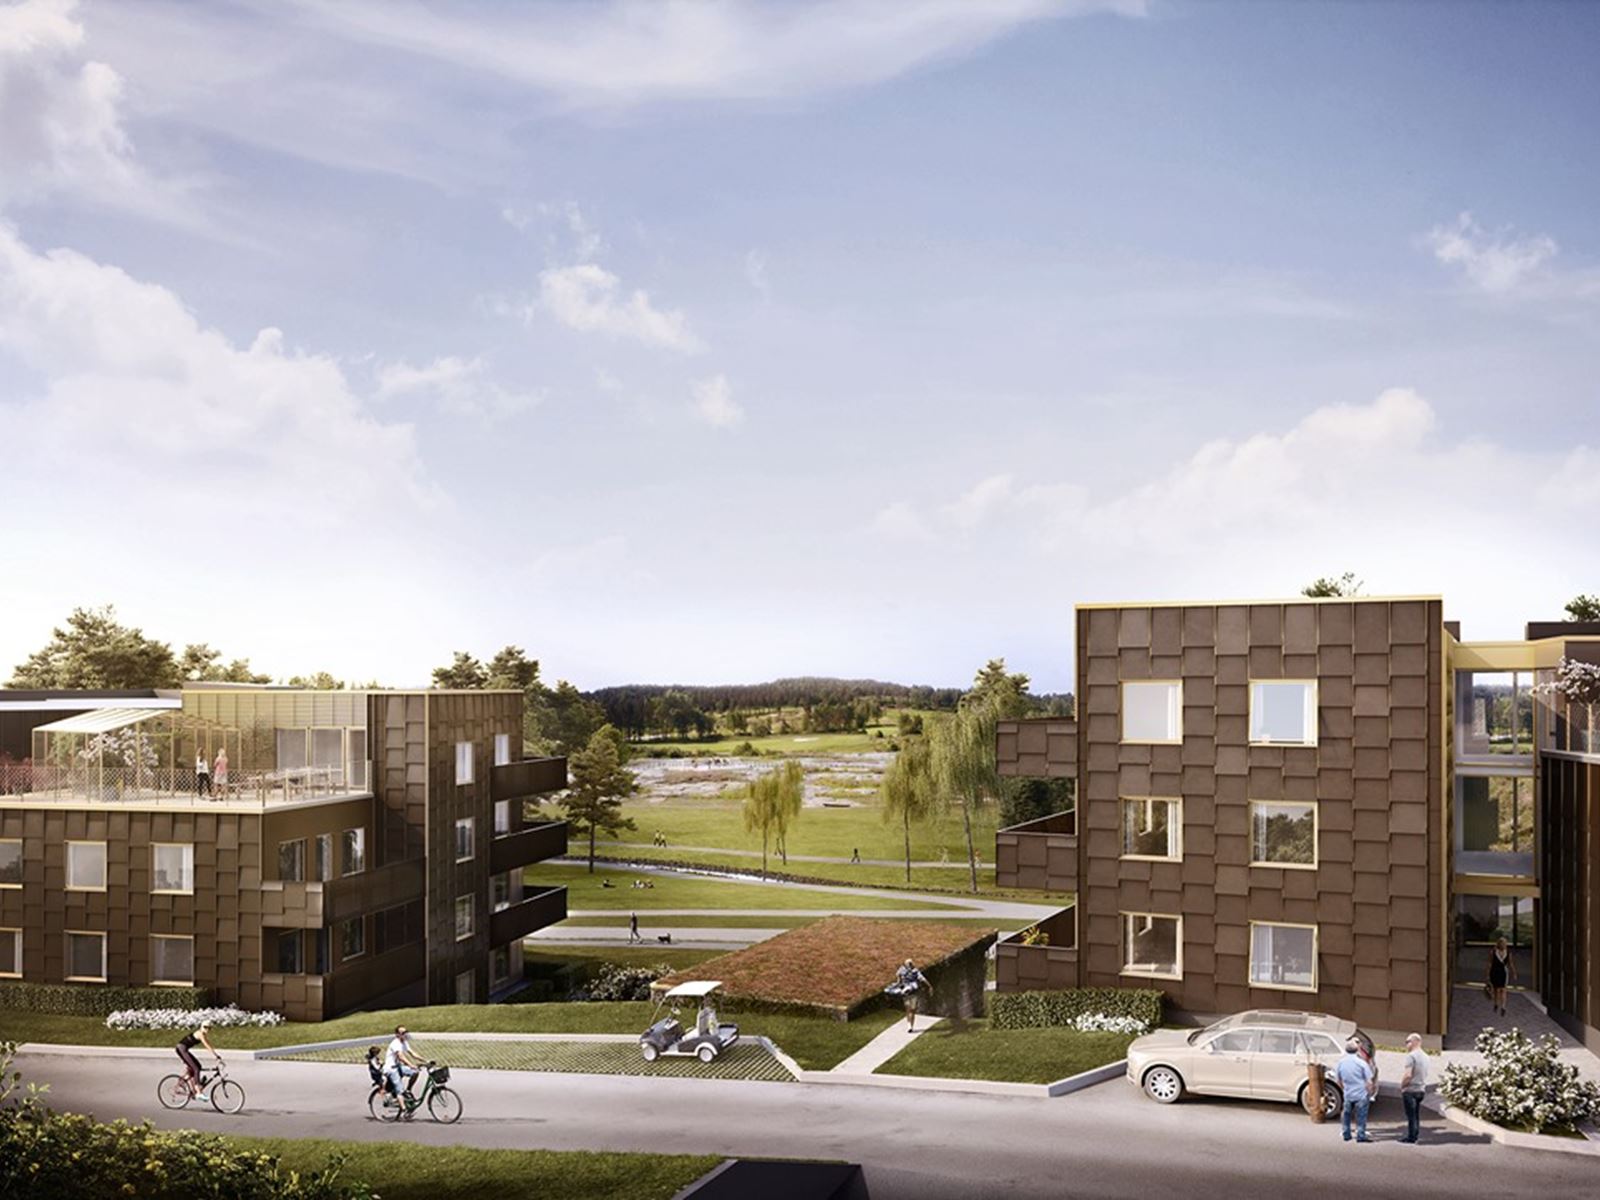 Moderna hem i fritt läge, granne med den nya parken. Hills Villastad Söderläget - lgh 4-1003 - Bjurfors